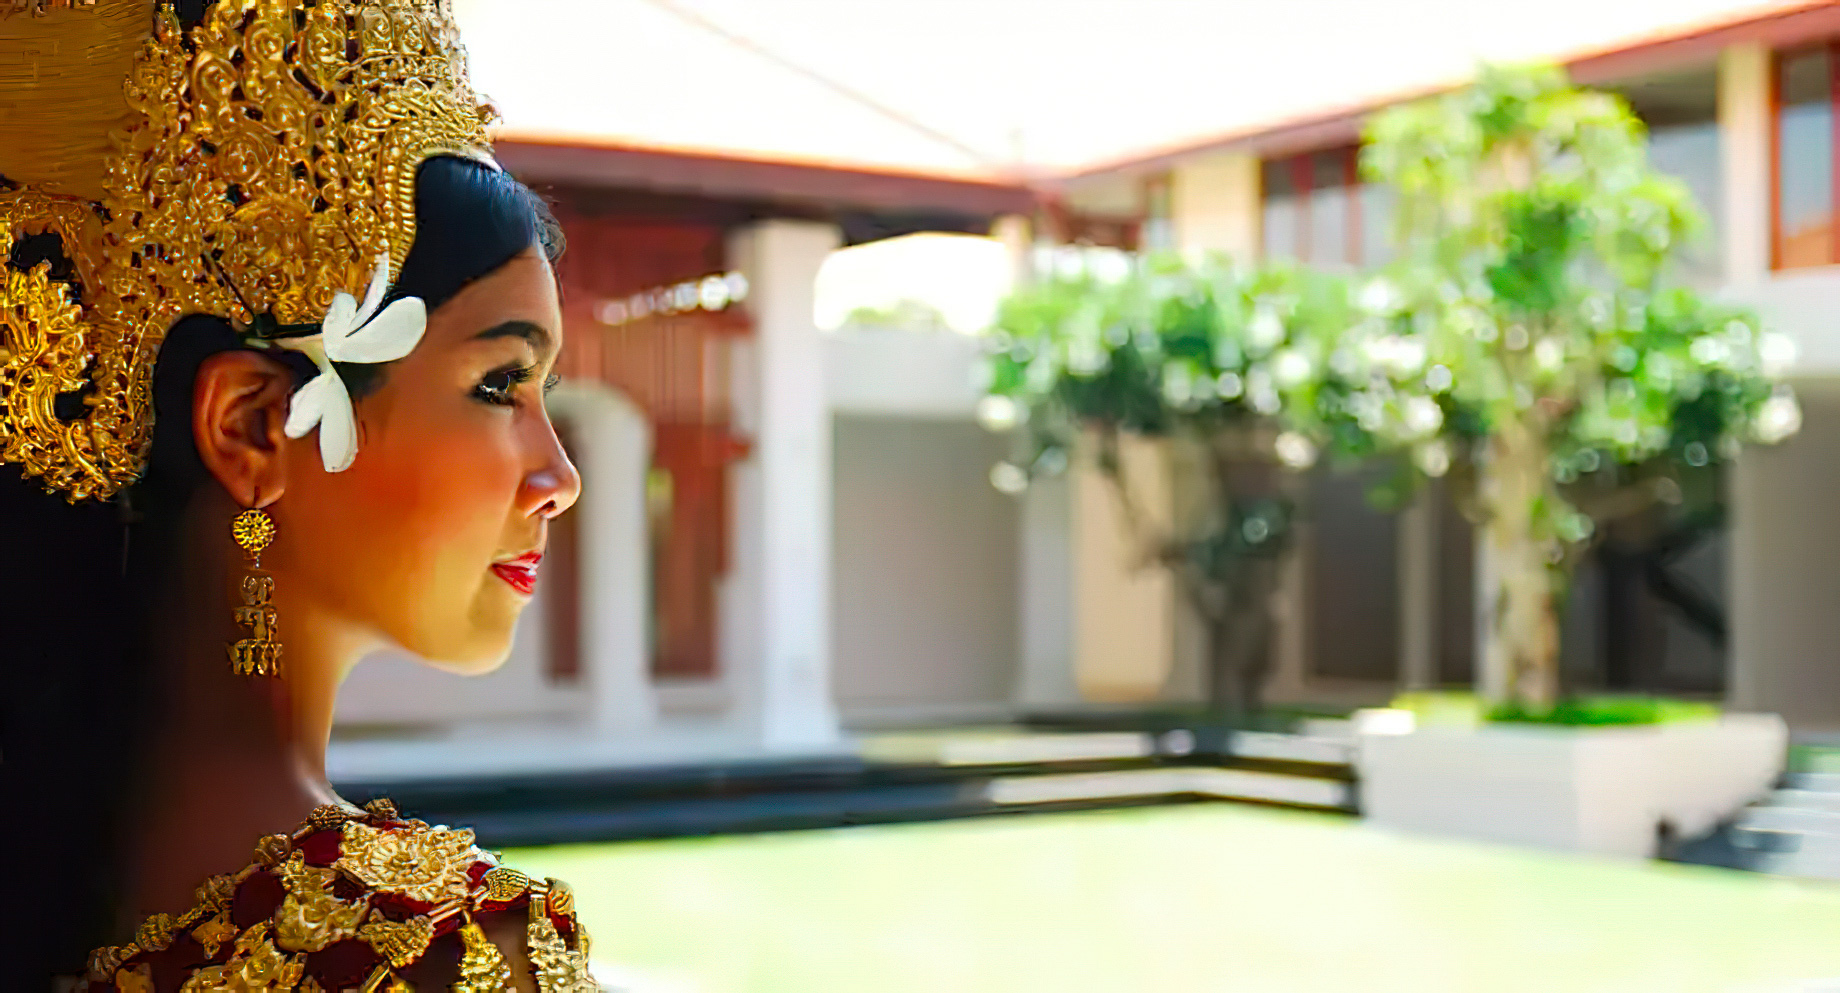 Anantara Angkor Resort – Siem Reap, Cambodia – Courtyard Wedding